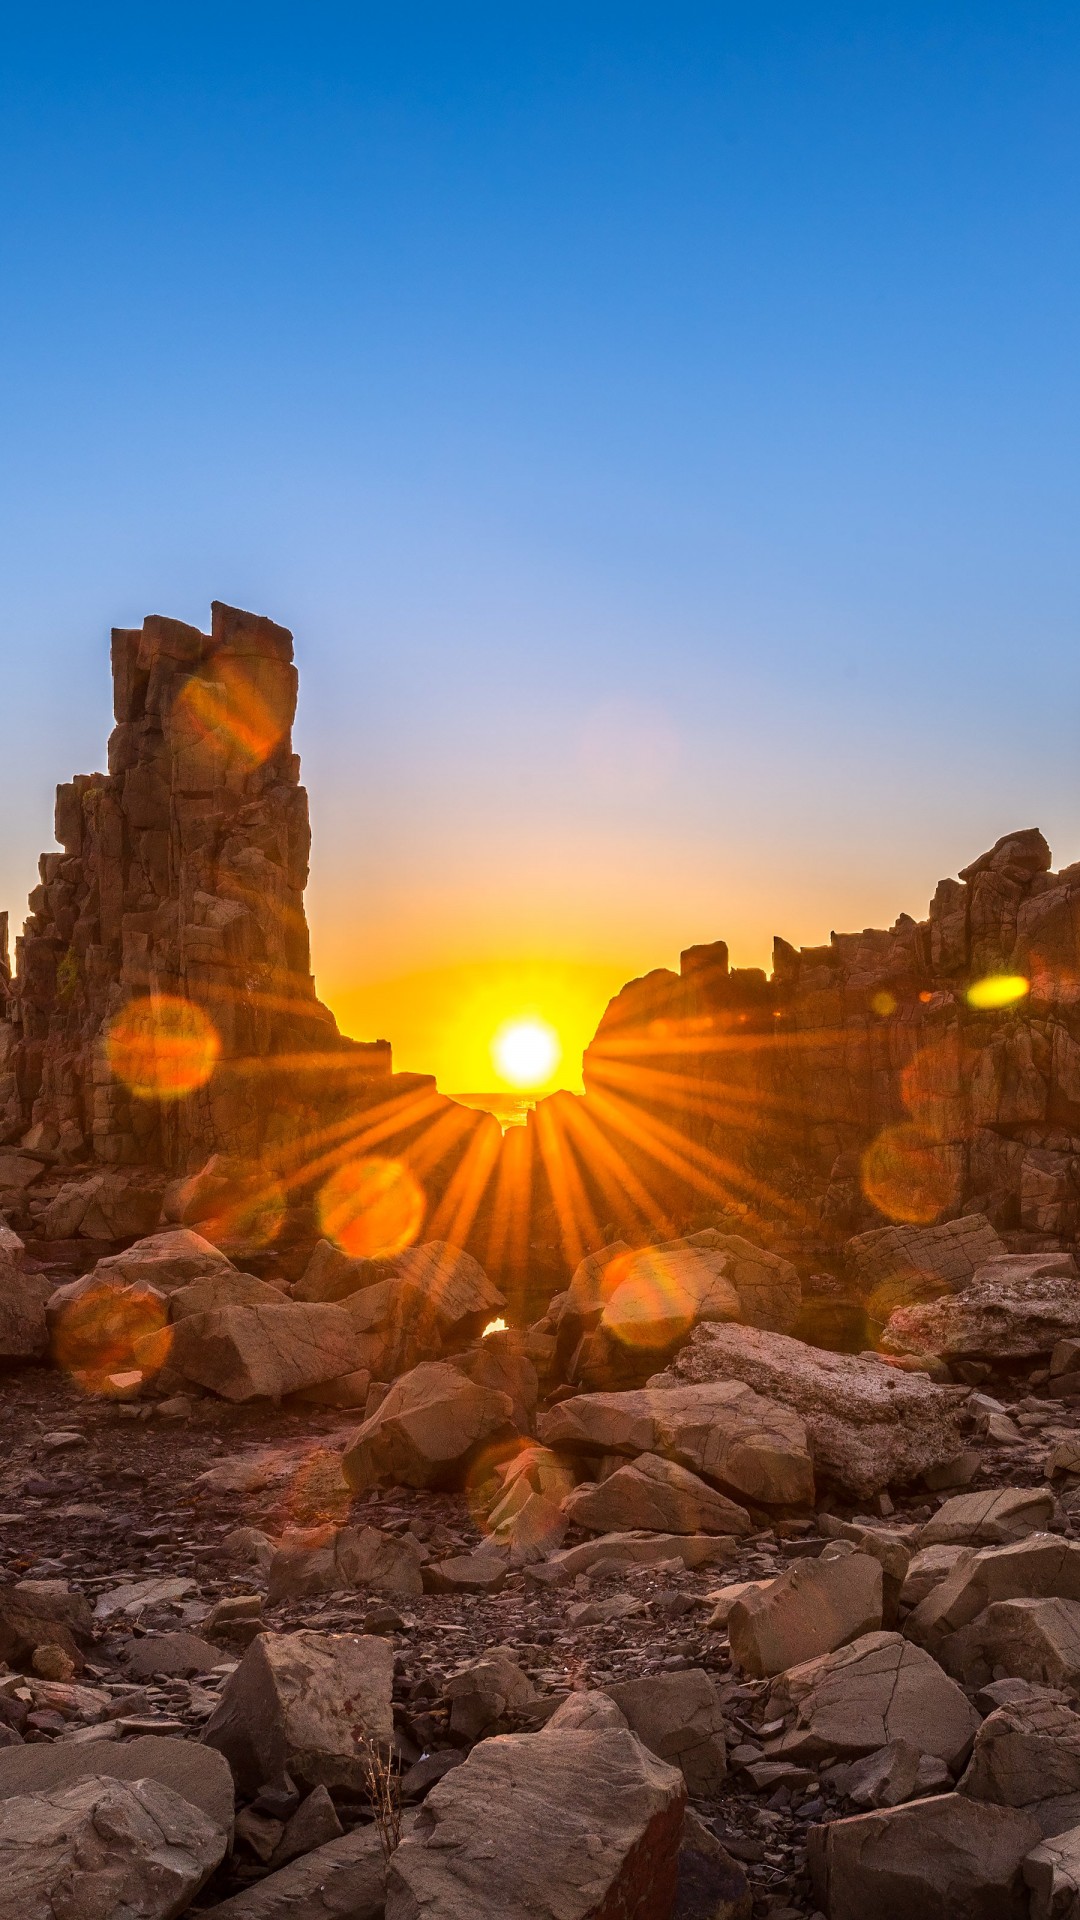 Sunrise Over Bombo Headland, Australia Wallpaper for HTC One